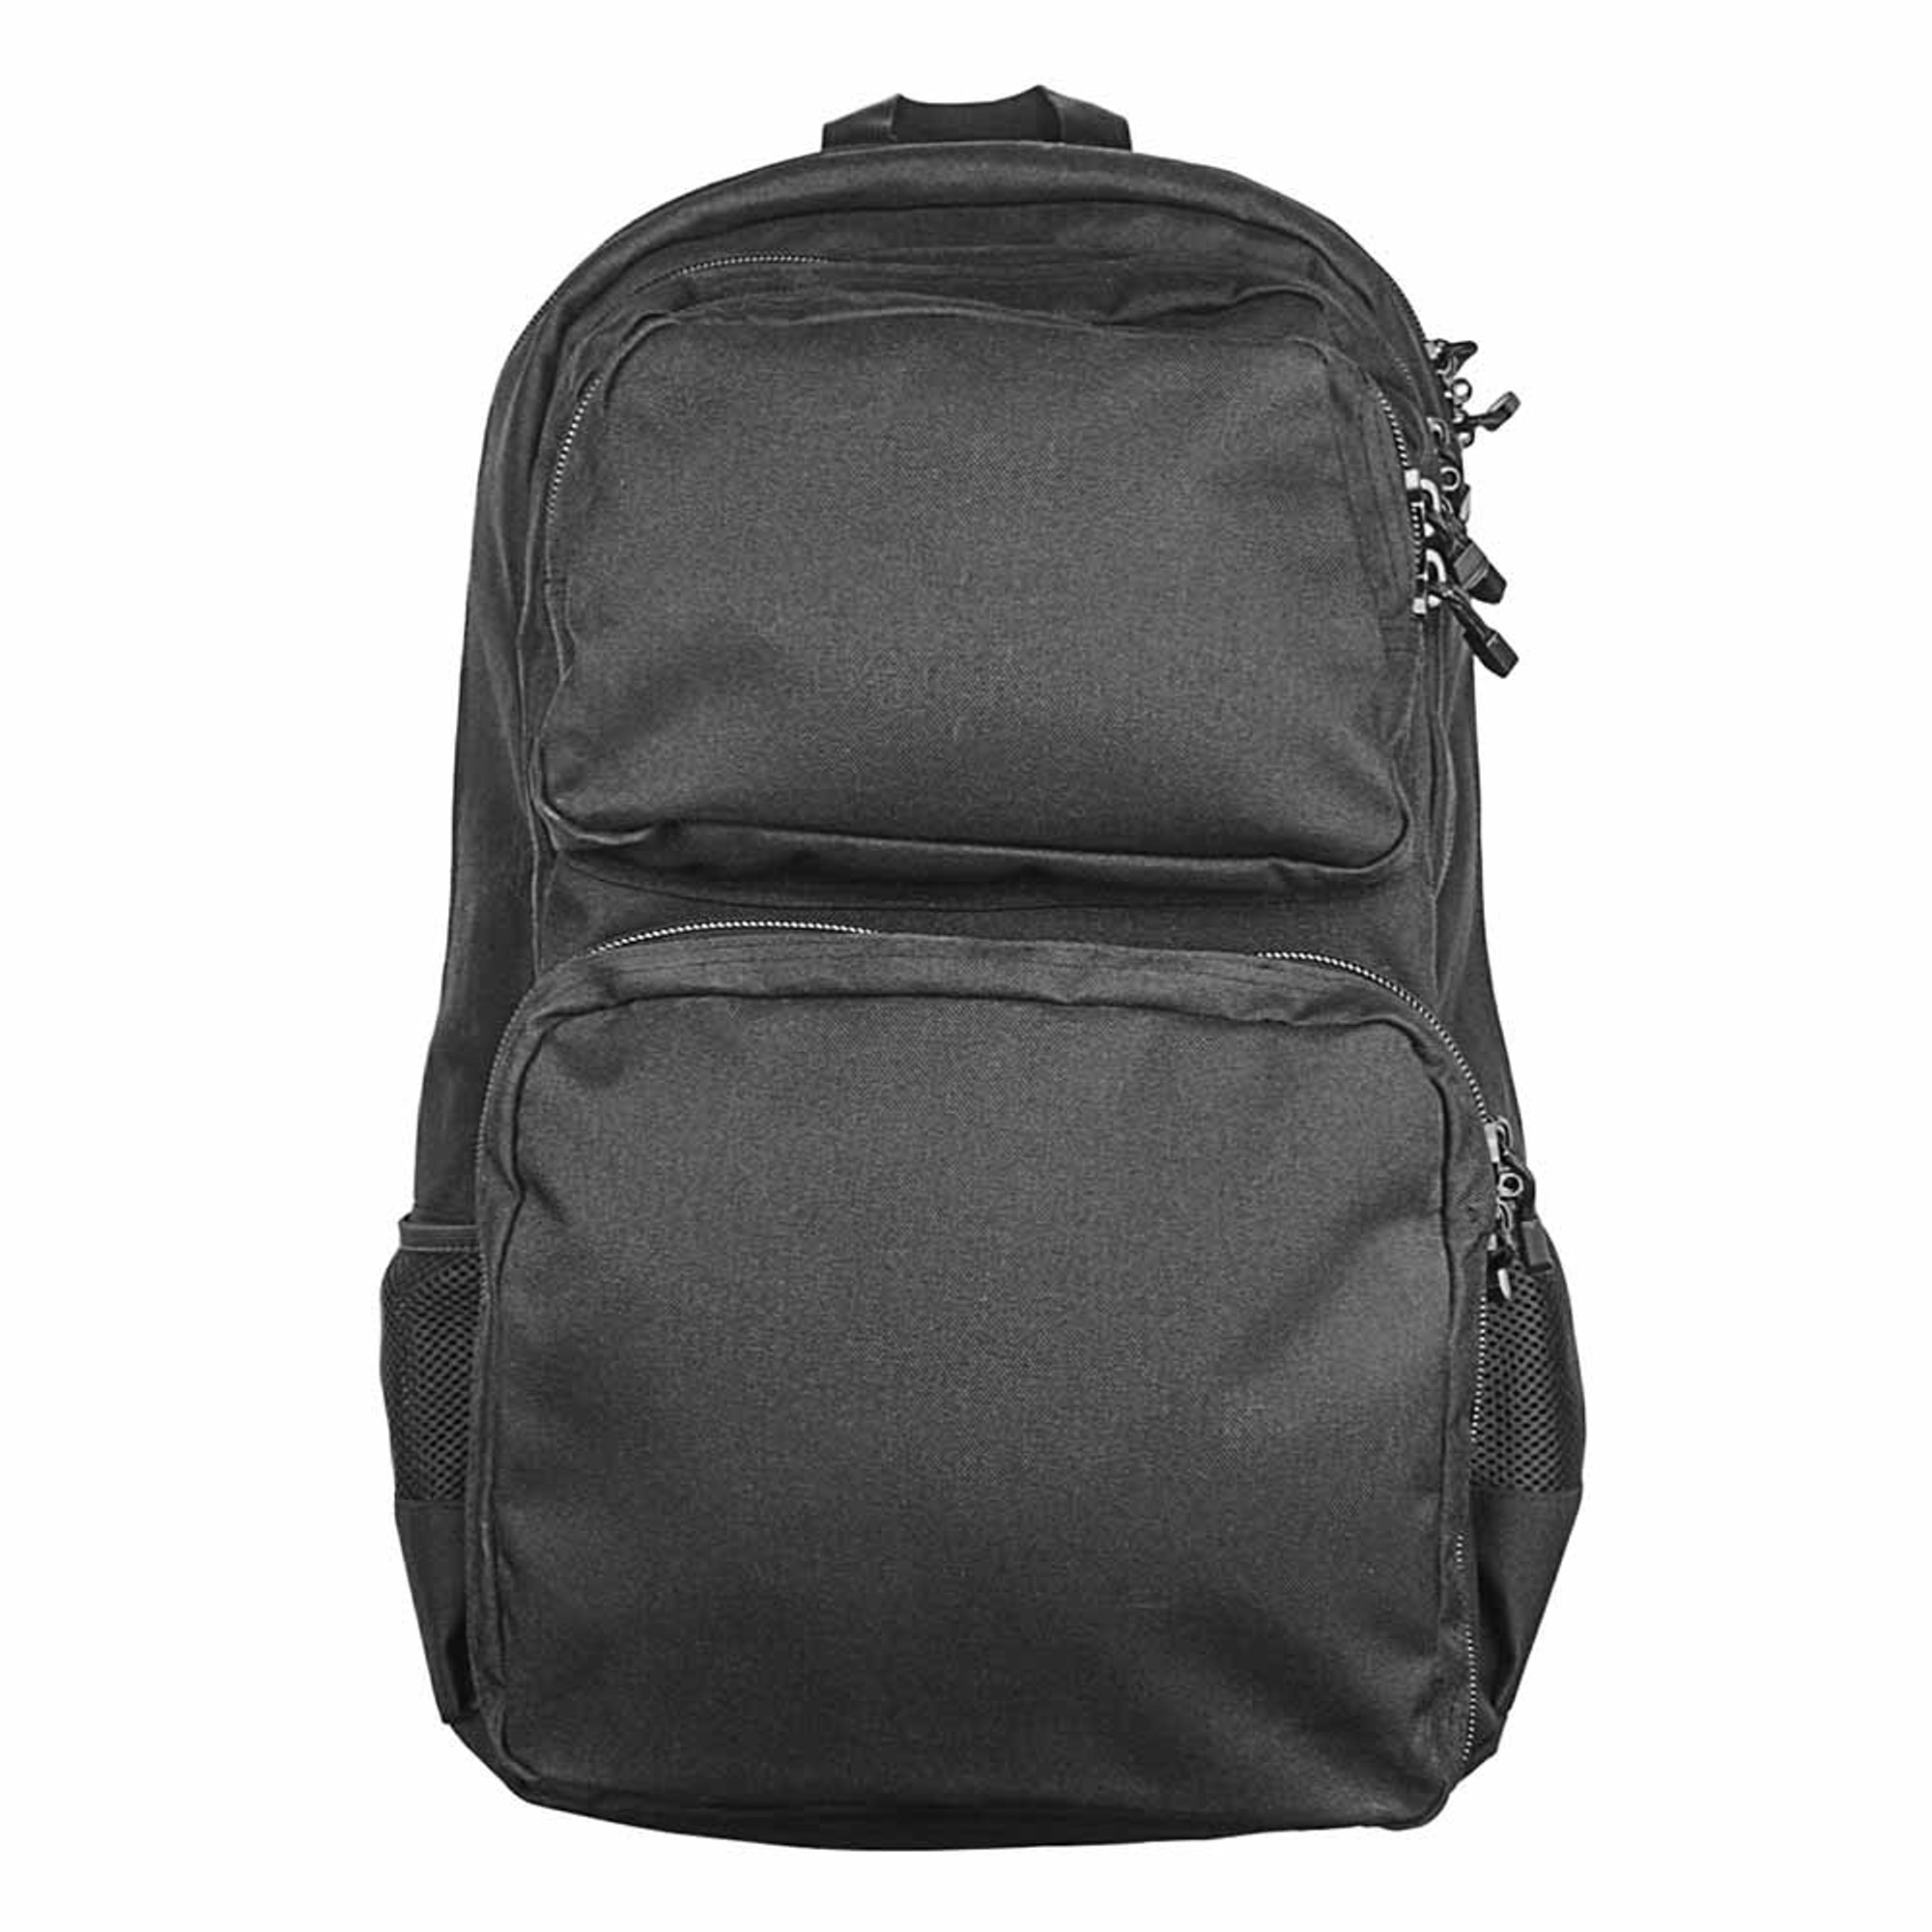 VISM Takedown Carbine Backpack - Black